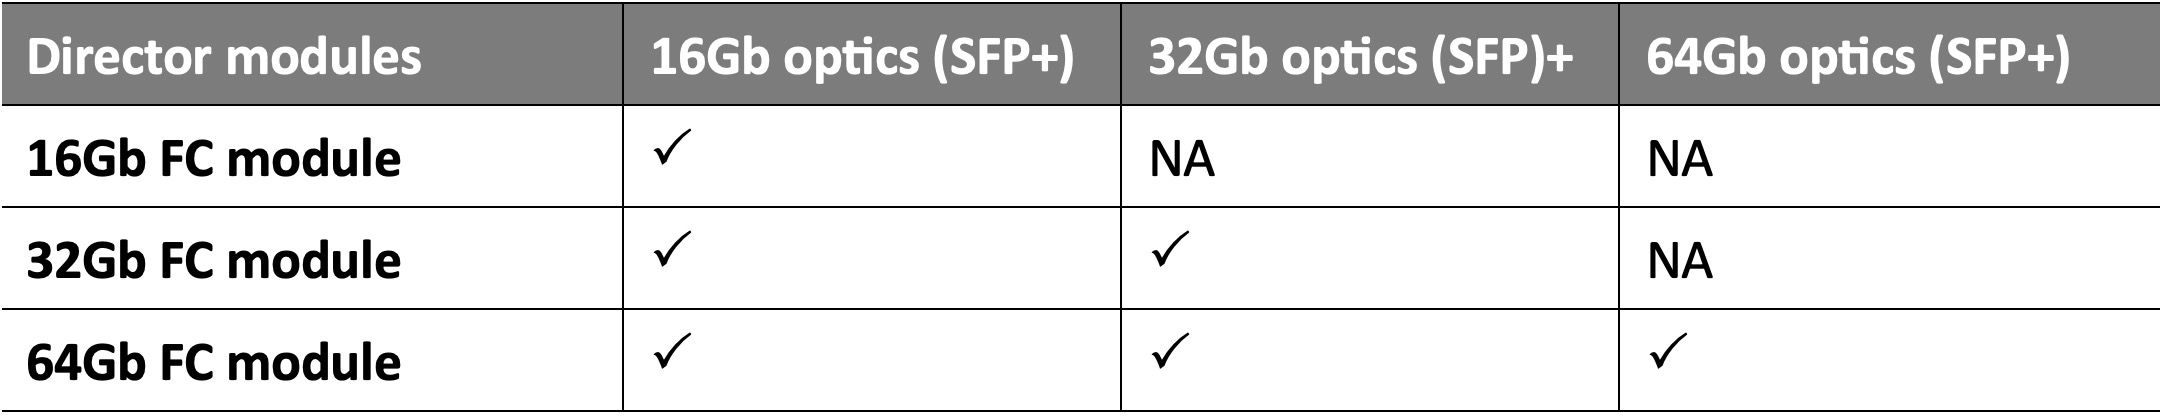 Upgrading HPE C-series SN8700C directors from 16Gb (Gen 5) to 32Gb (Gen 6).jpg